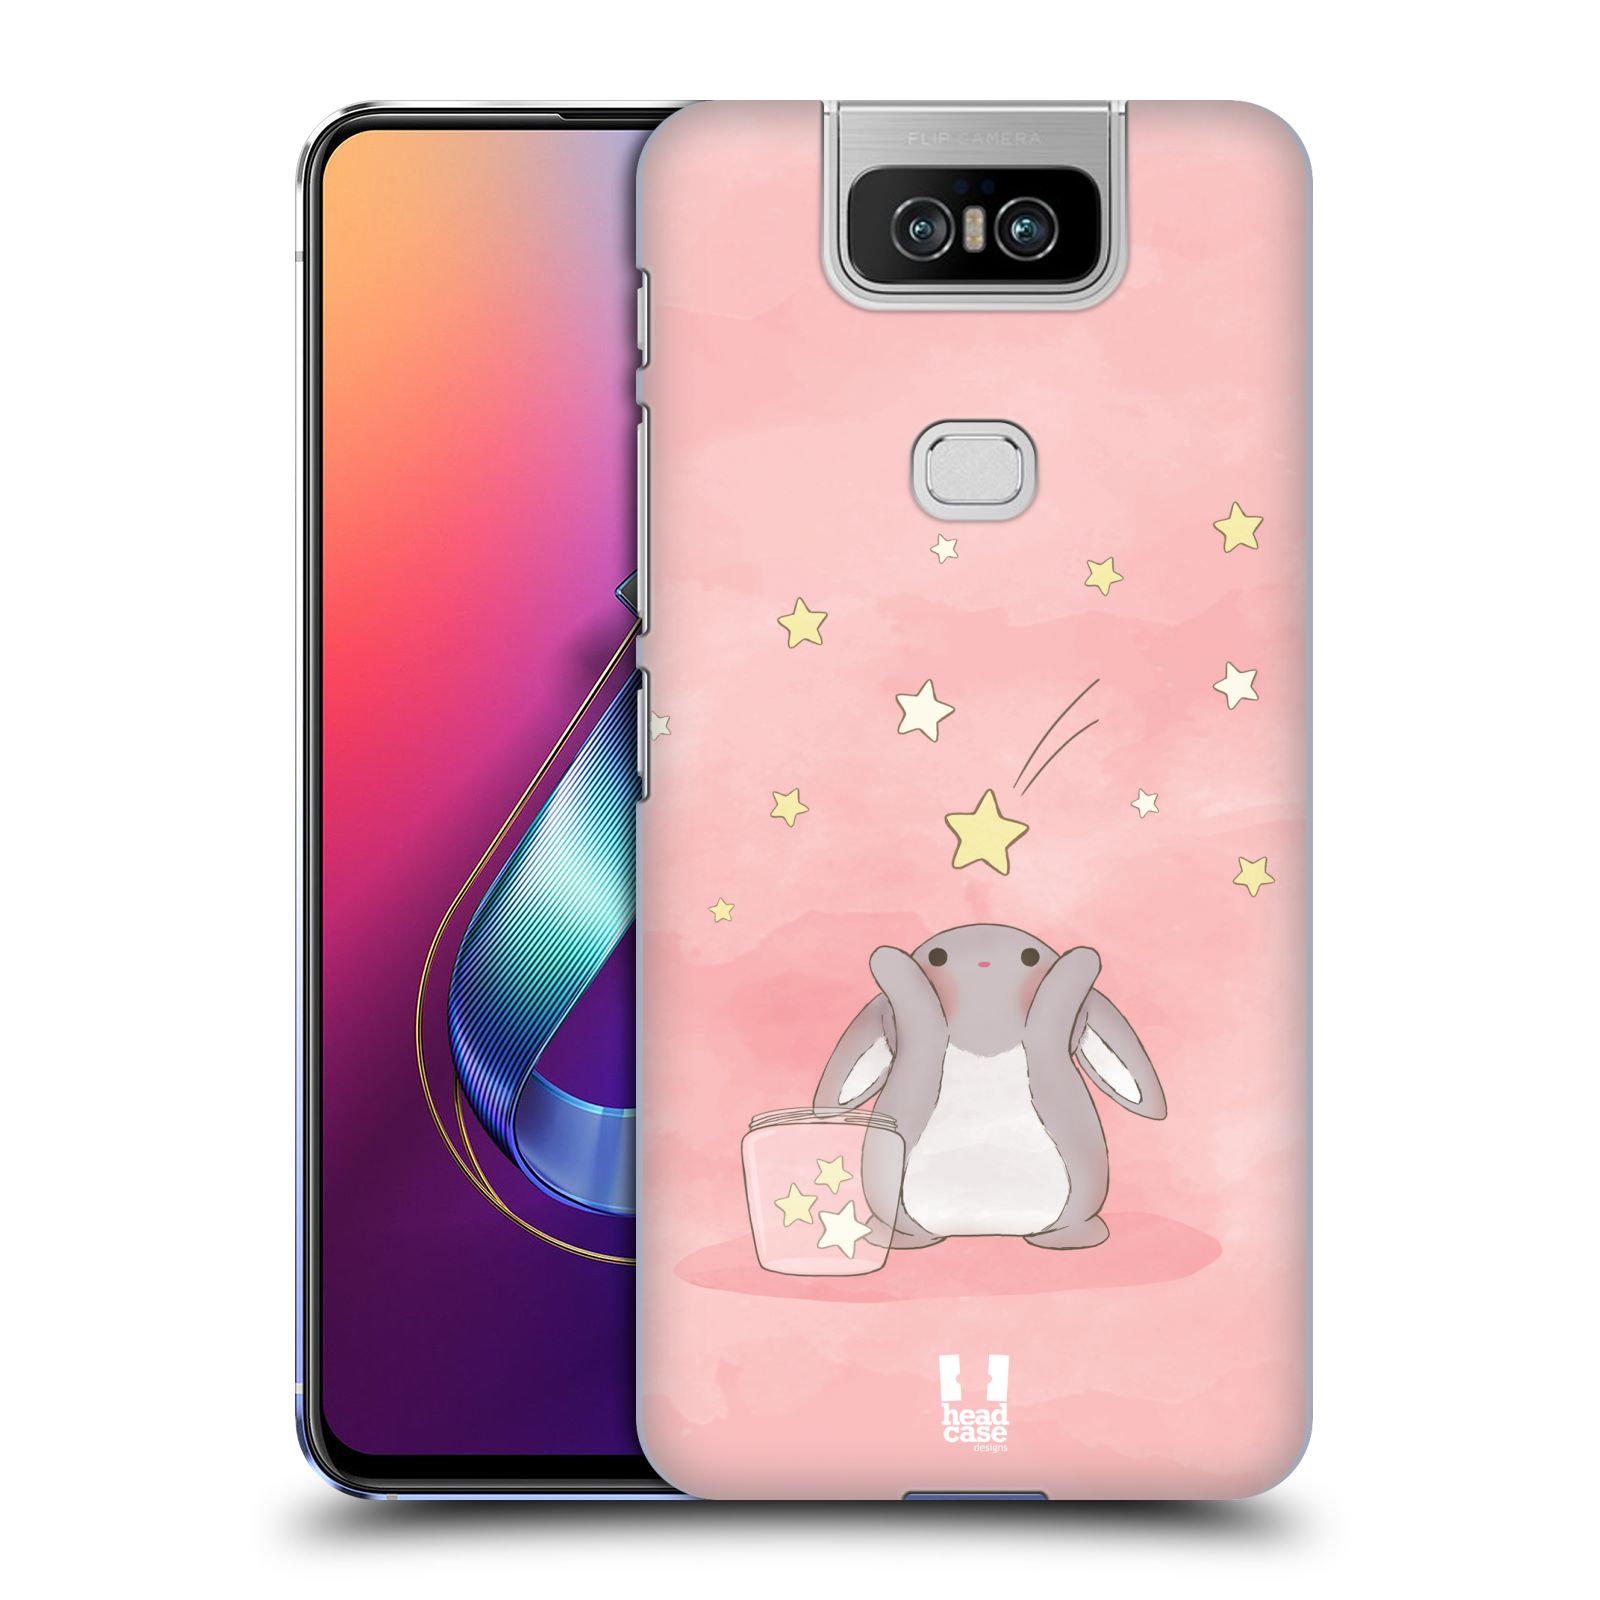 Pouzdro na mobil Asus Zenfone 6 ZS630KL - HEAD CASE - vzor králíček a hvězdy růžová